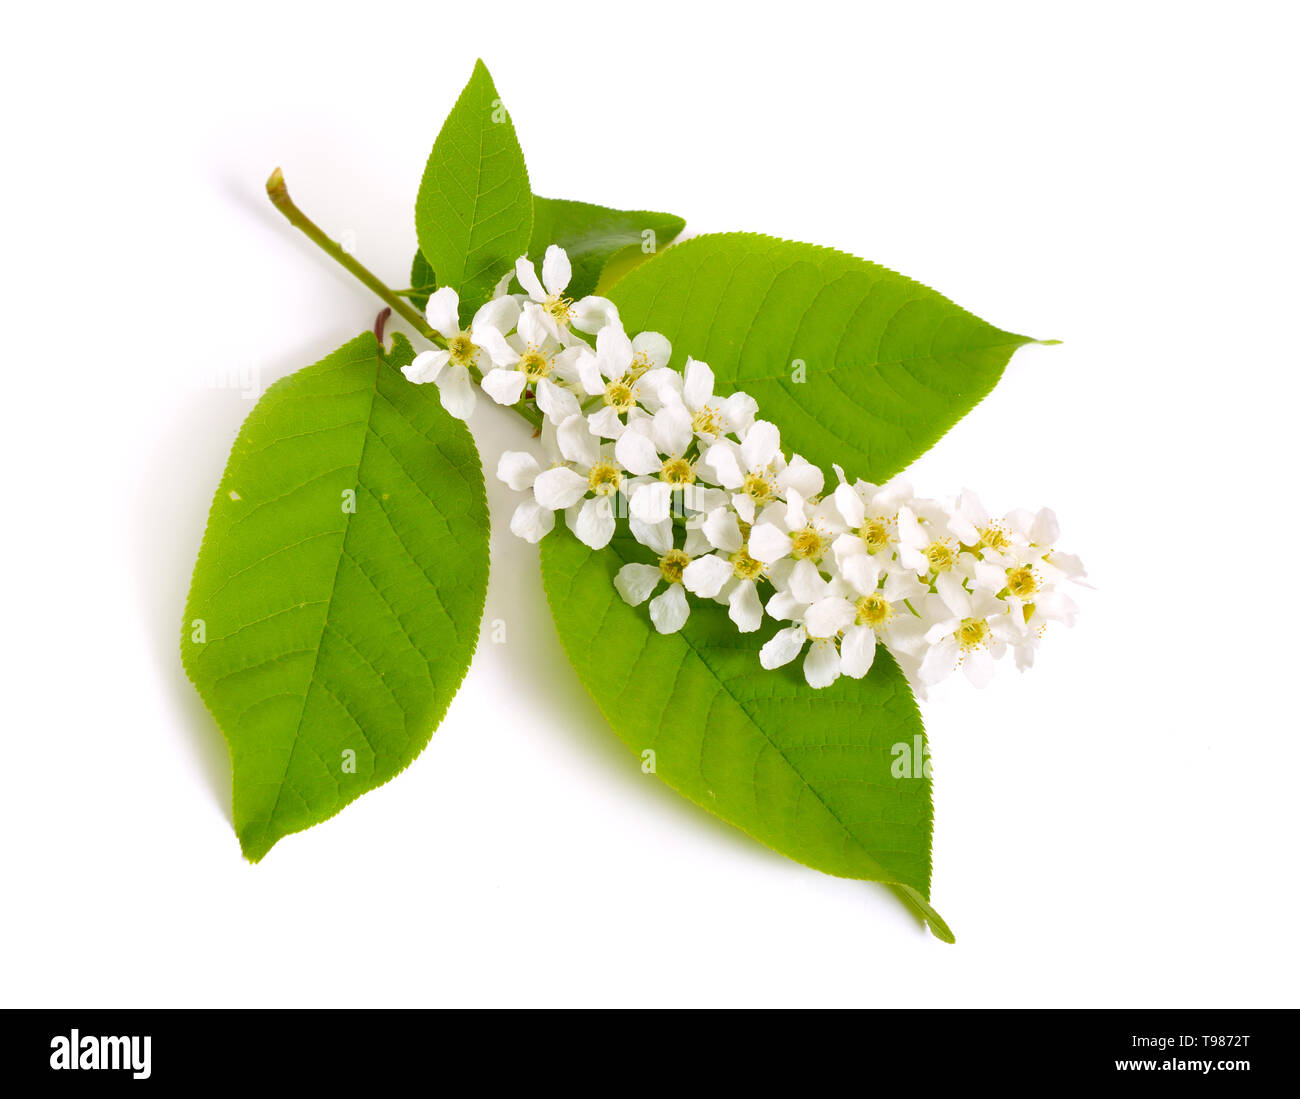 Prunus padus, connu sous le nom de bird cherry, micocoulier, hagberry ou prunier. Des fleurs. Isolé sur fond blanc Banque D'Images